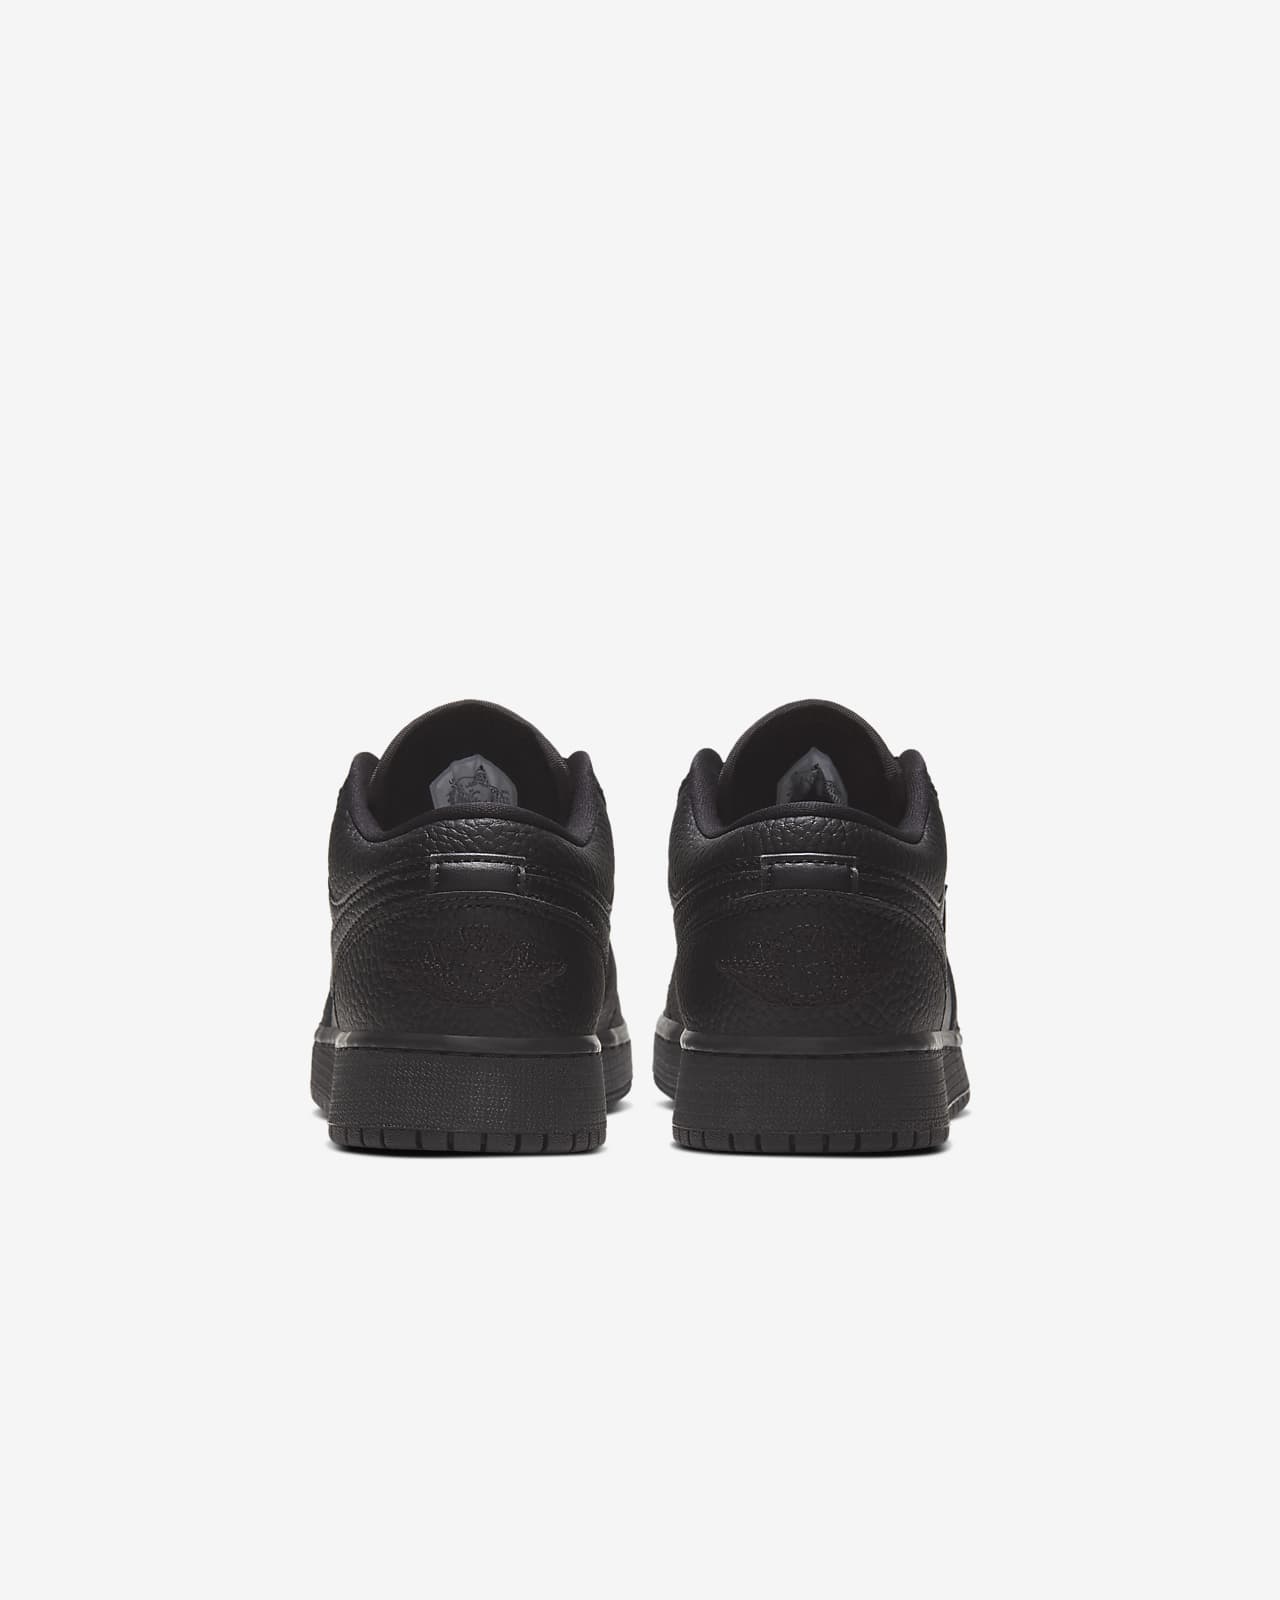 Jordan 1 Low-sko børn. Nike DK